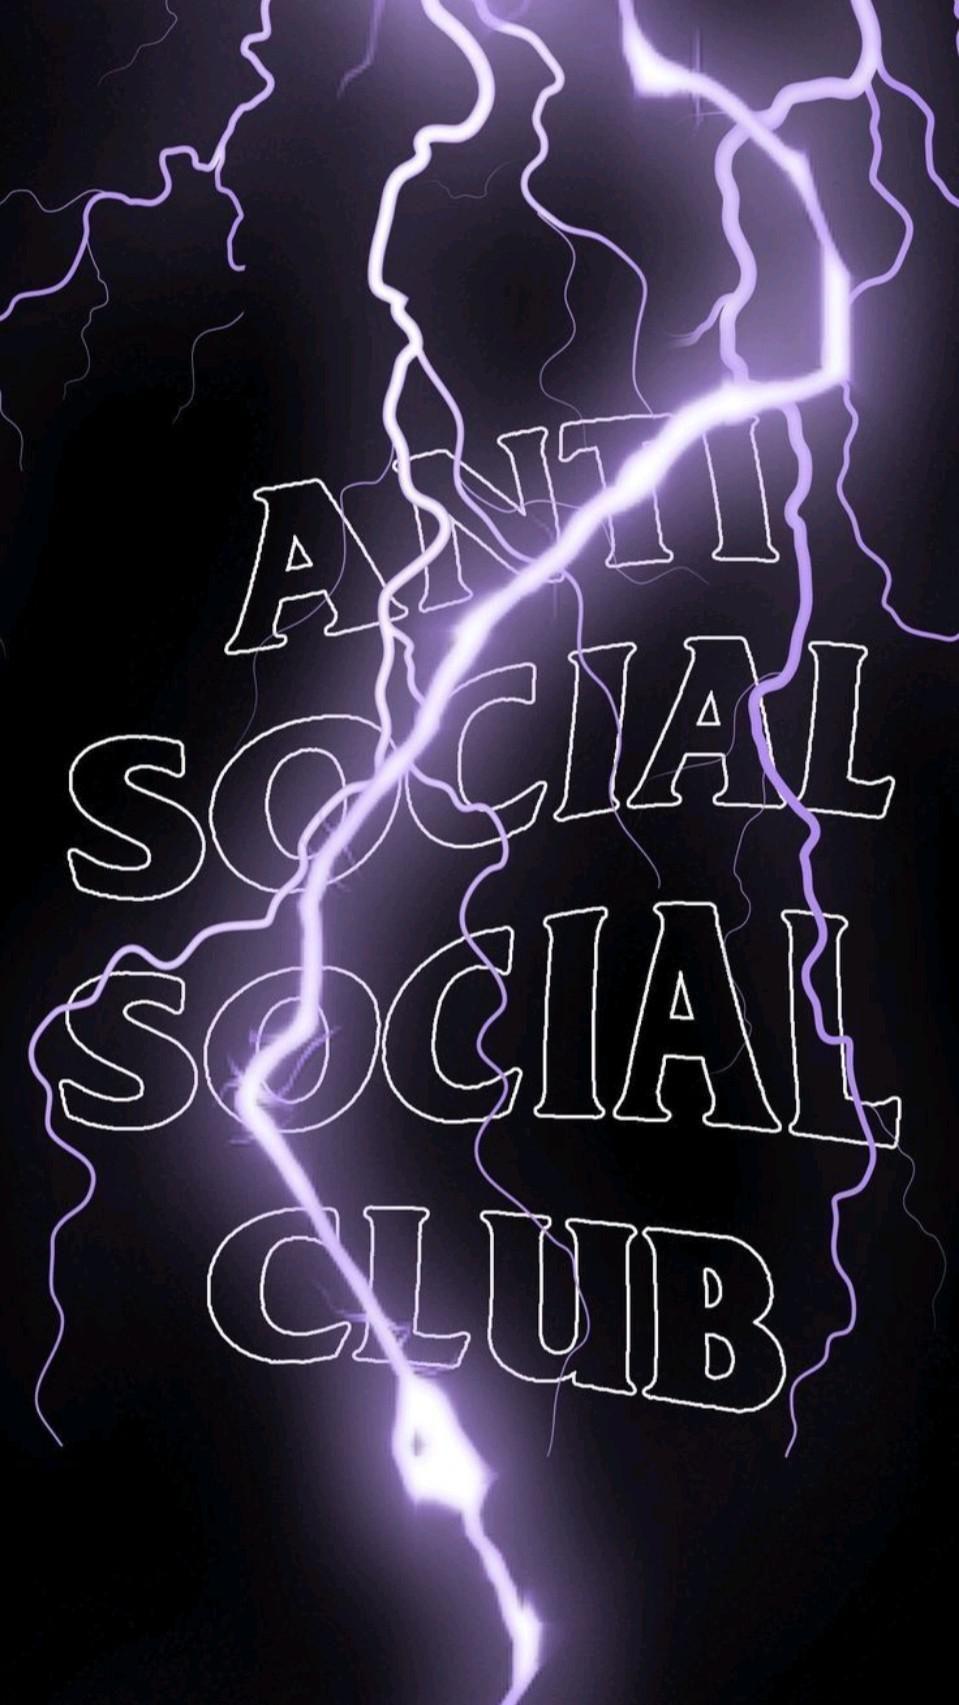 Anti social social club wallpaper by the rad factory - Anti Social Social Club